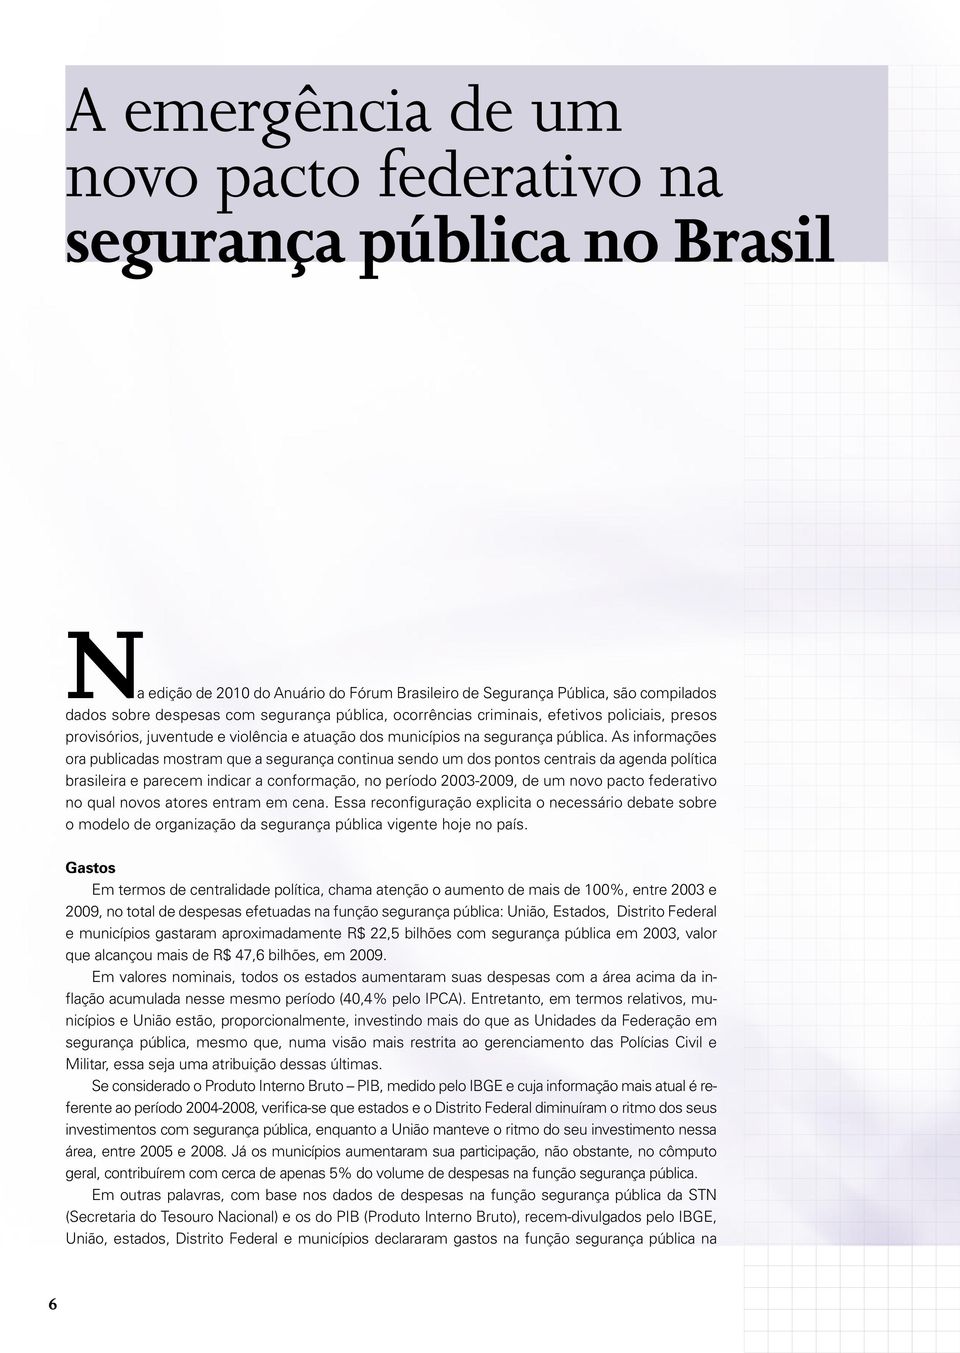 As informações ora publicadas mostram que a segurança continua sendo um dos pontos centrais da agenda política brasileira e parecem indicar a conformação, no período 2003-2009, de um novo pacto